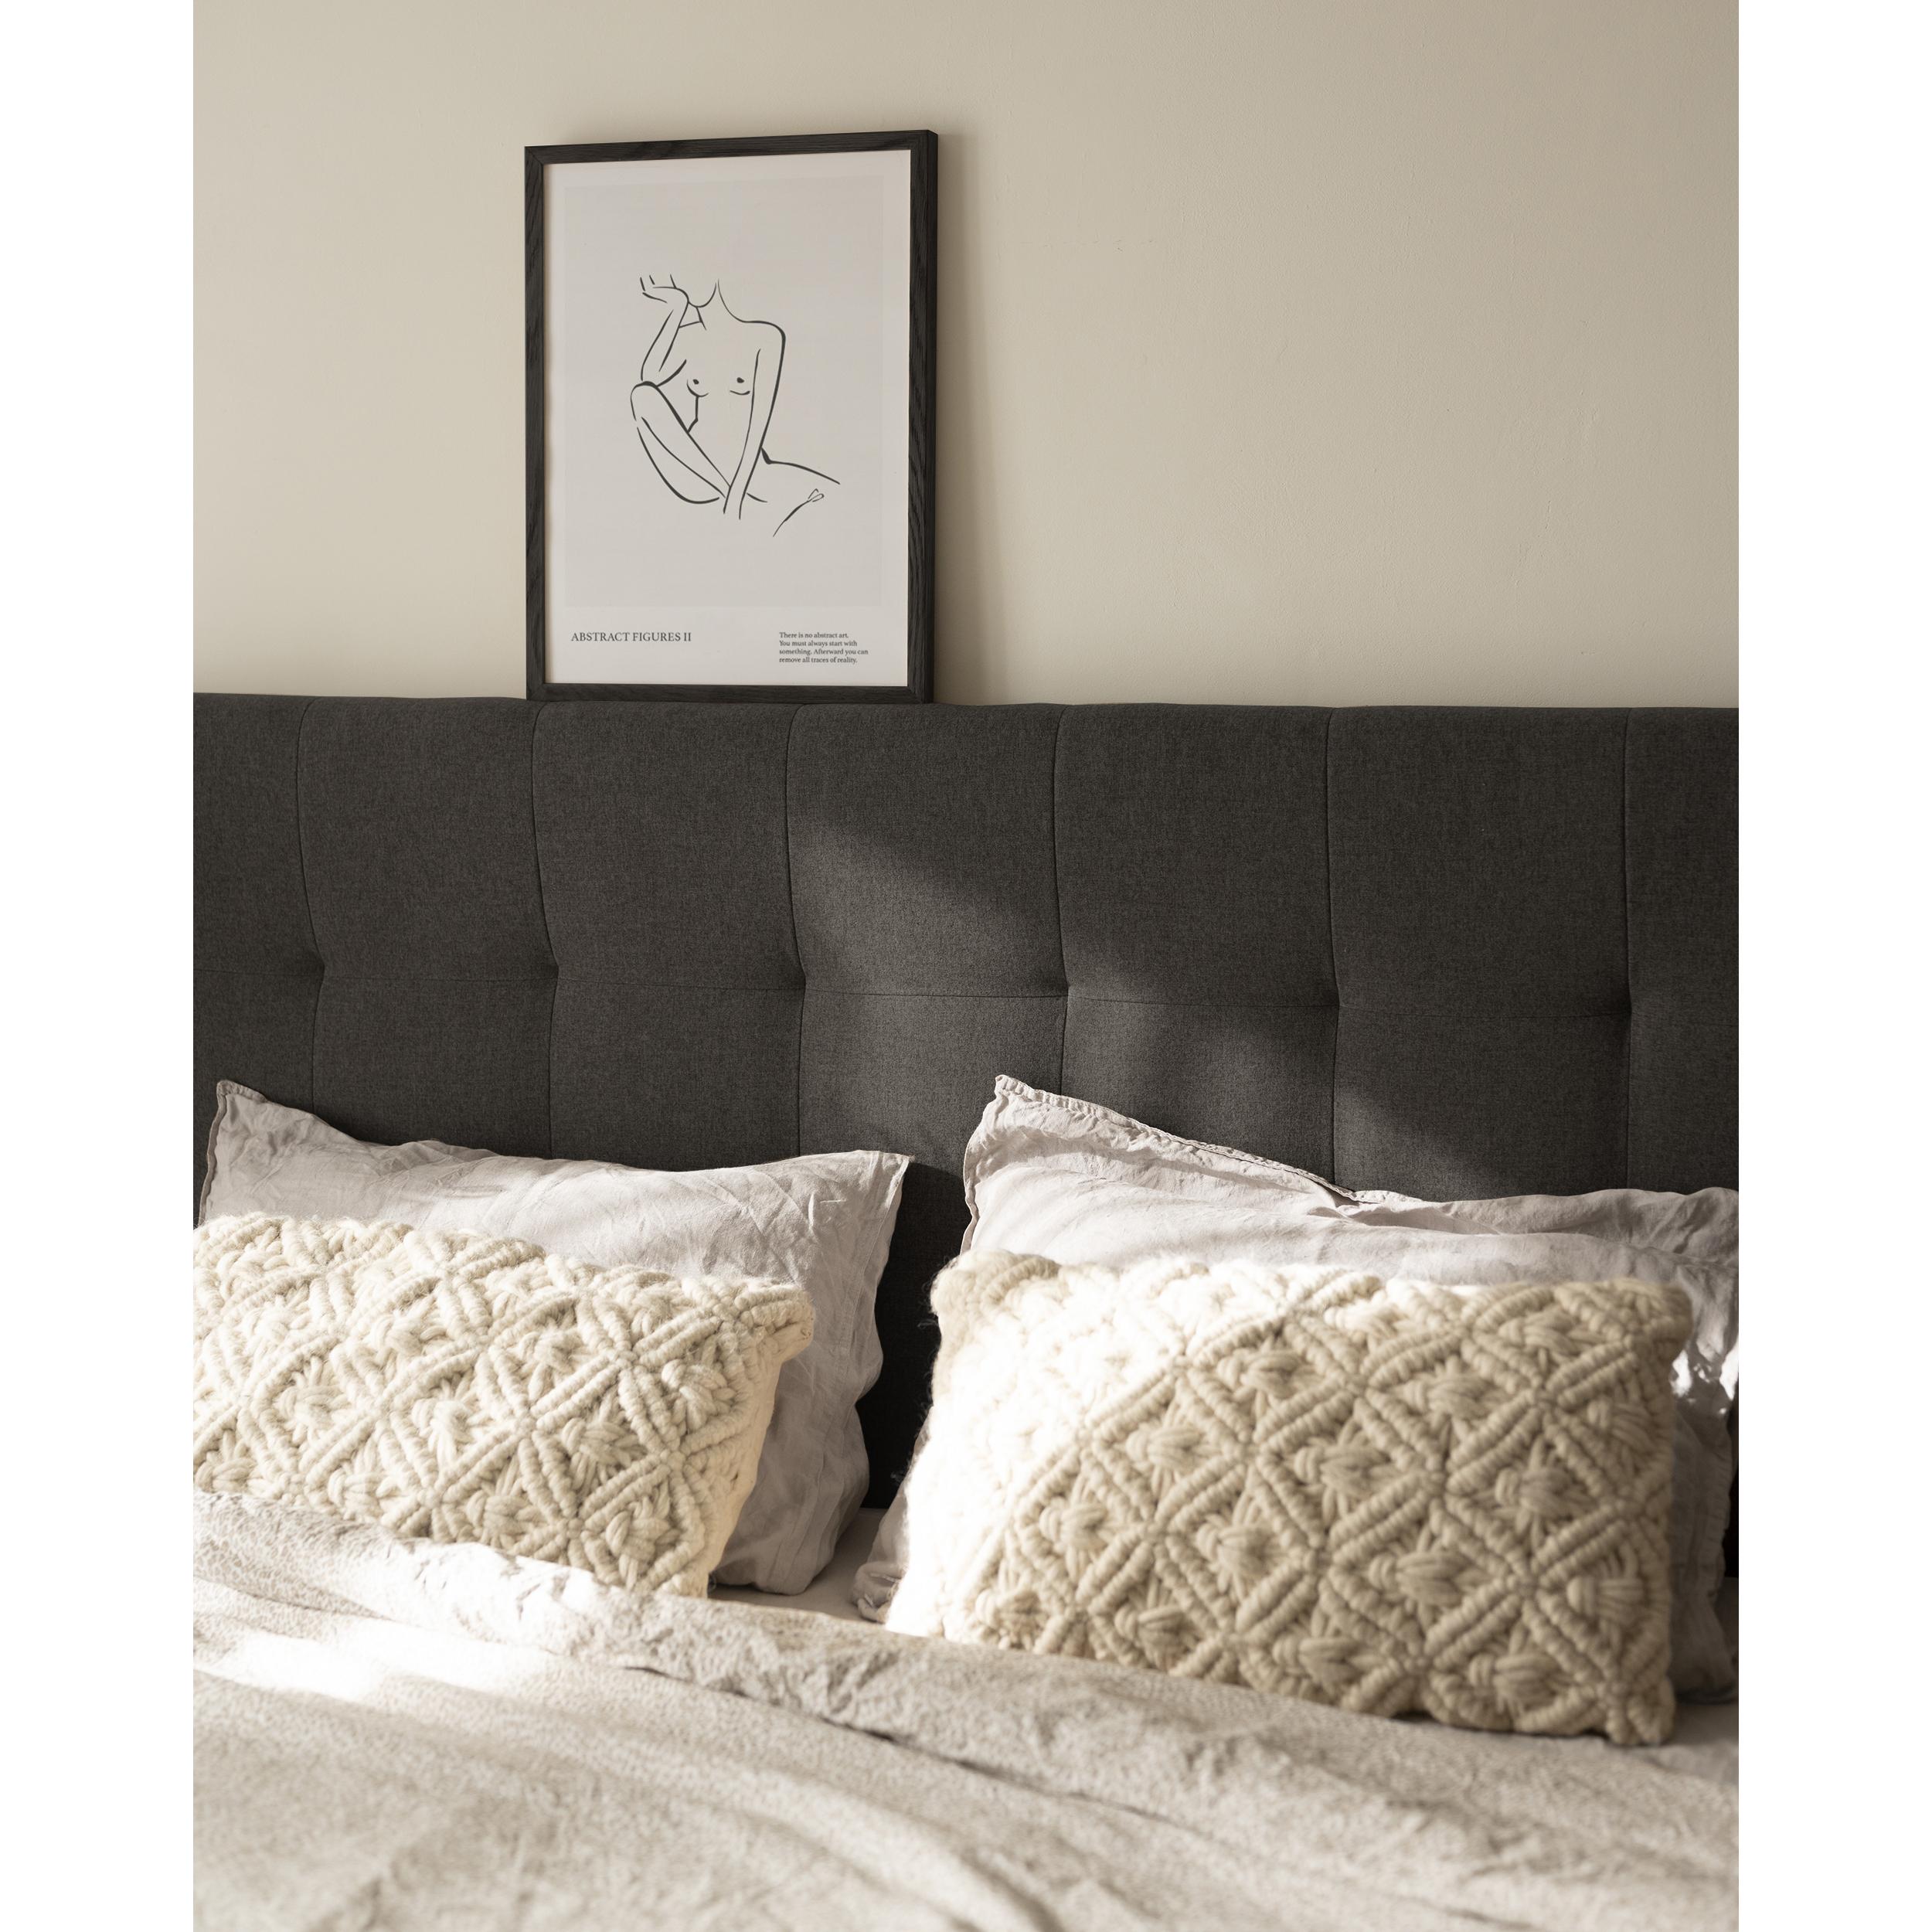 Tête de lit rembourrée en polyester avec plis en noir de différentes tailles